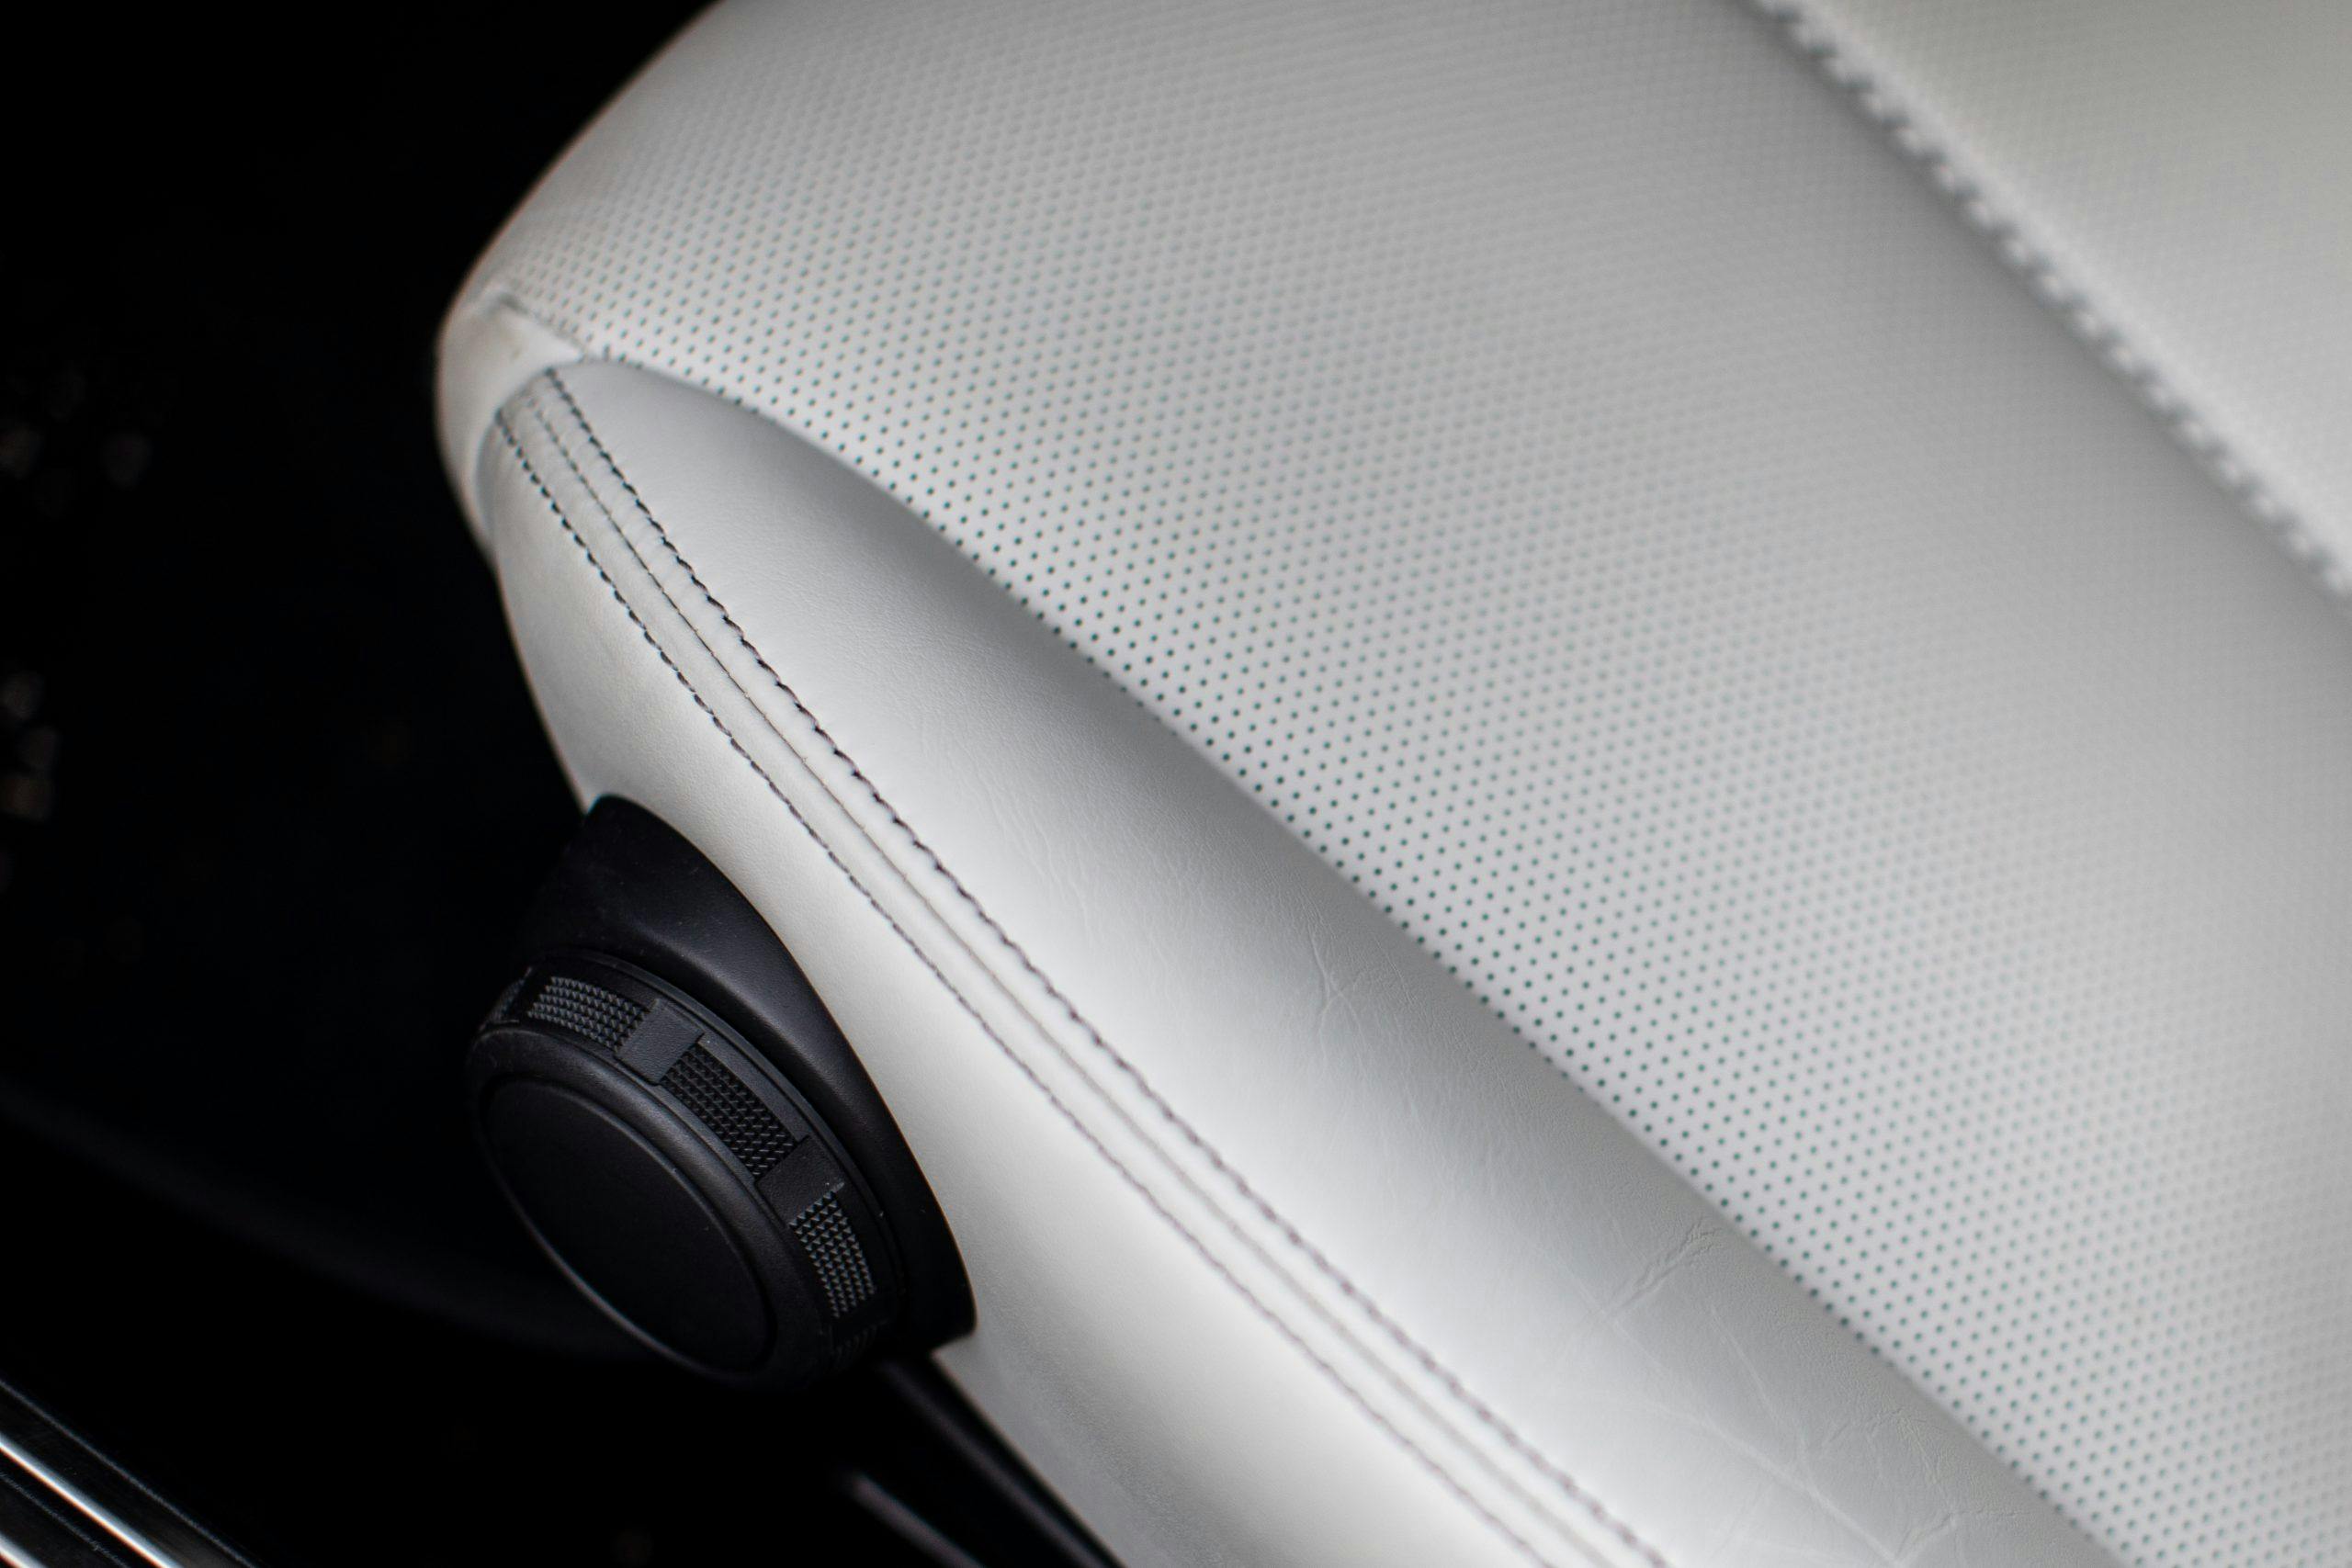 Miata RF seat stitching detail